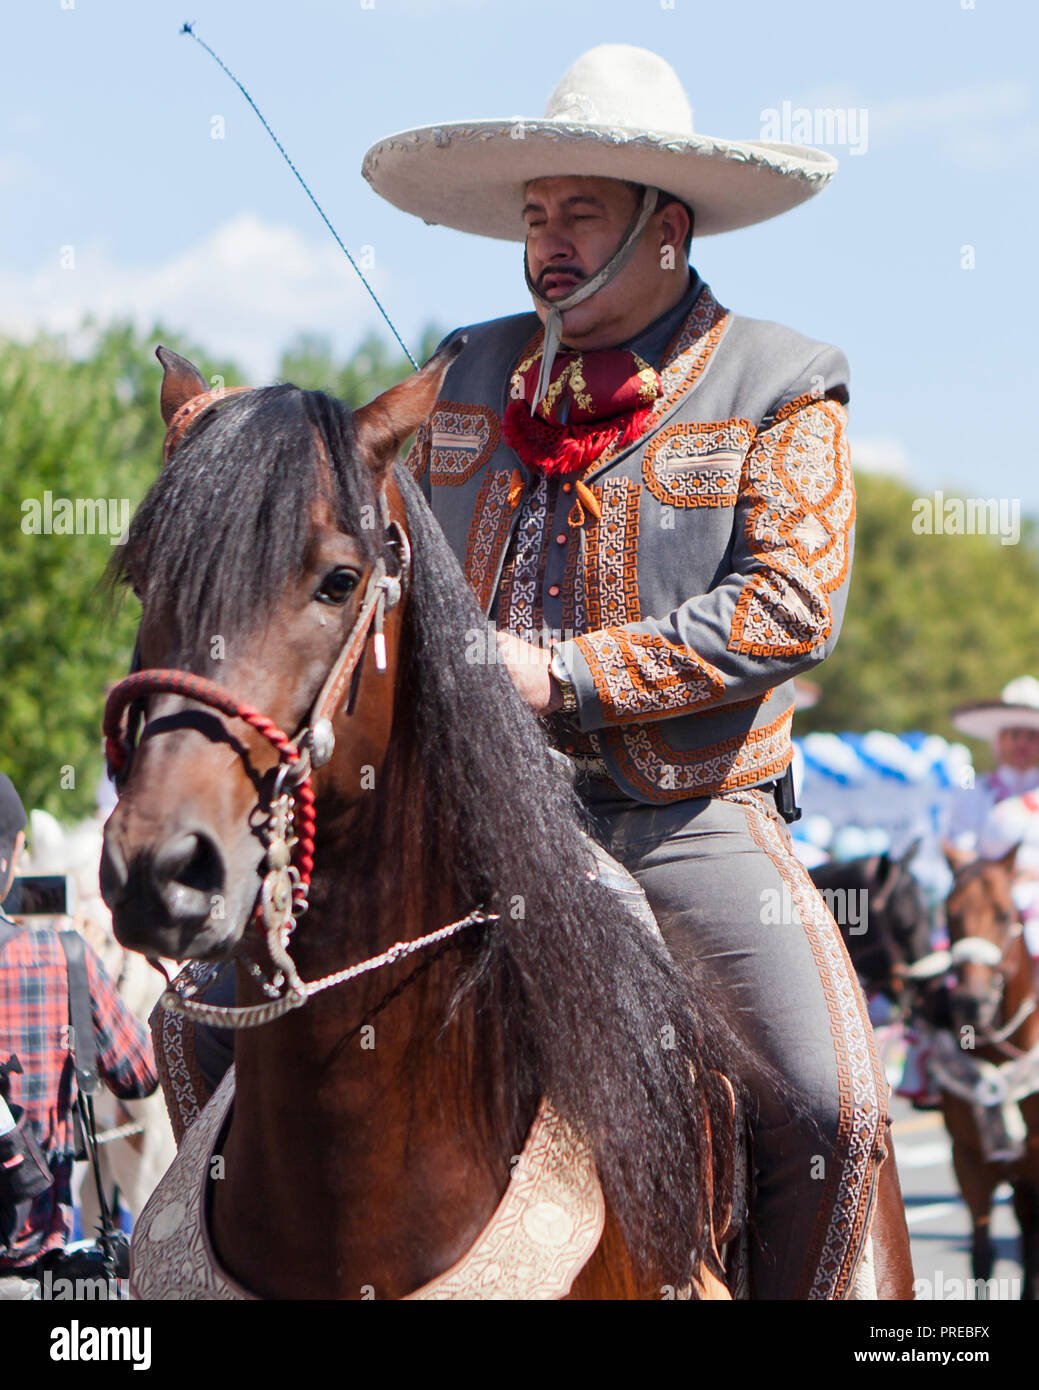 Mexican vaquero (cowboy) on horseback - USA Stock Photo